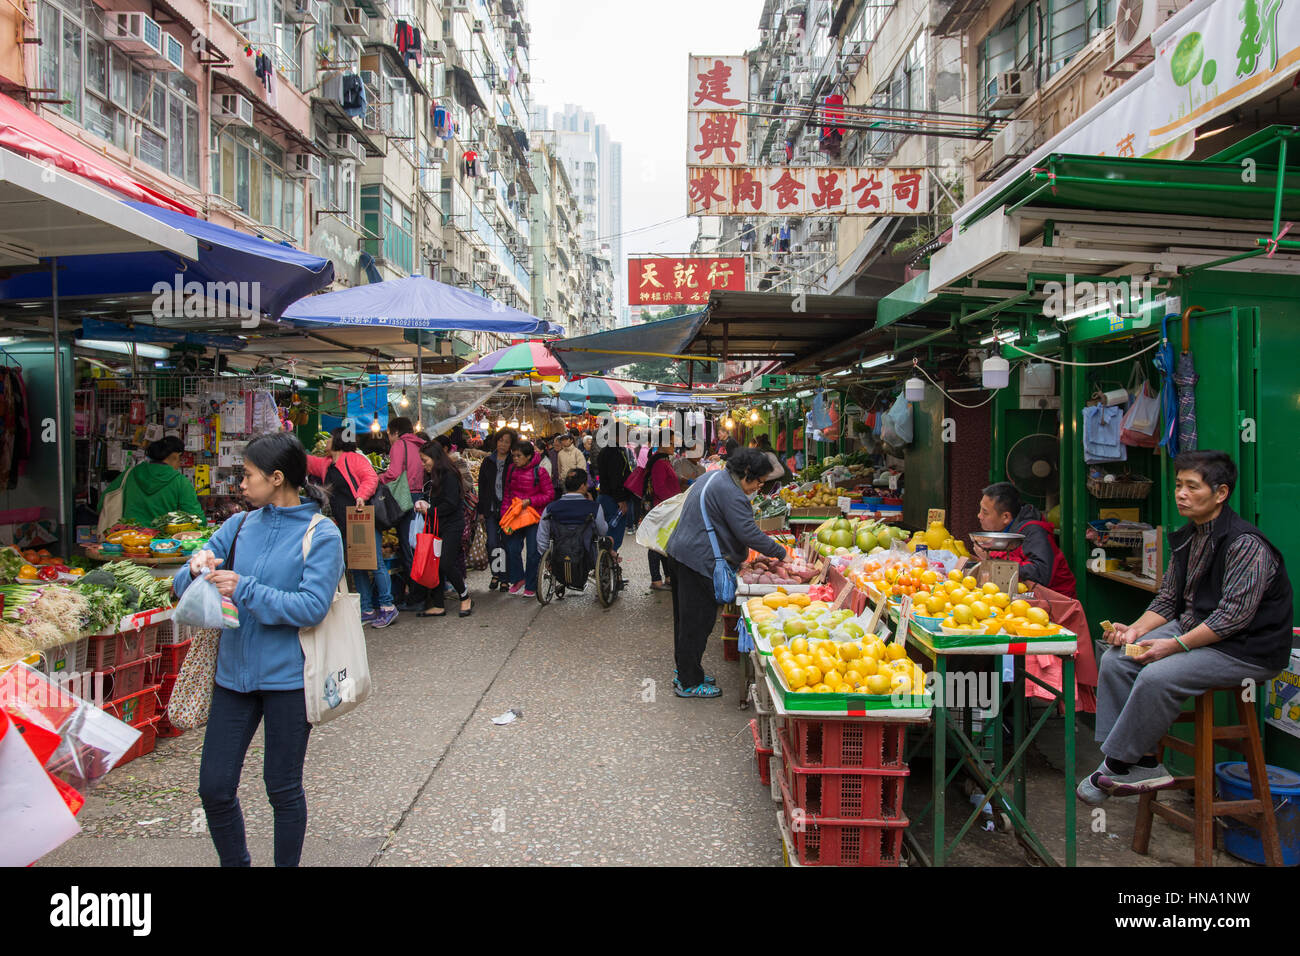 Un marché de fruits dans les rues de Mpng district Kok, Hong Kong Banque D'Images